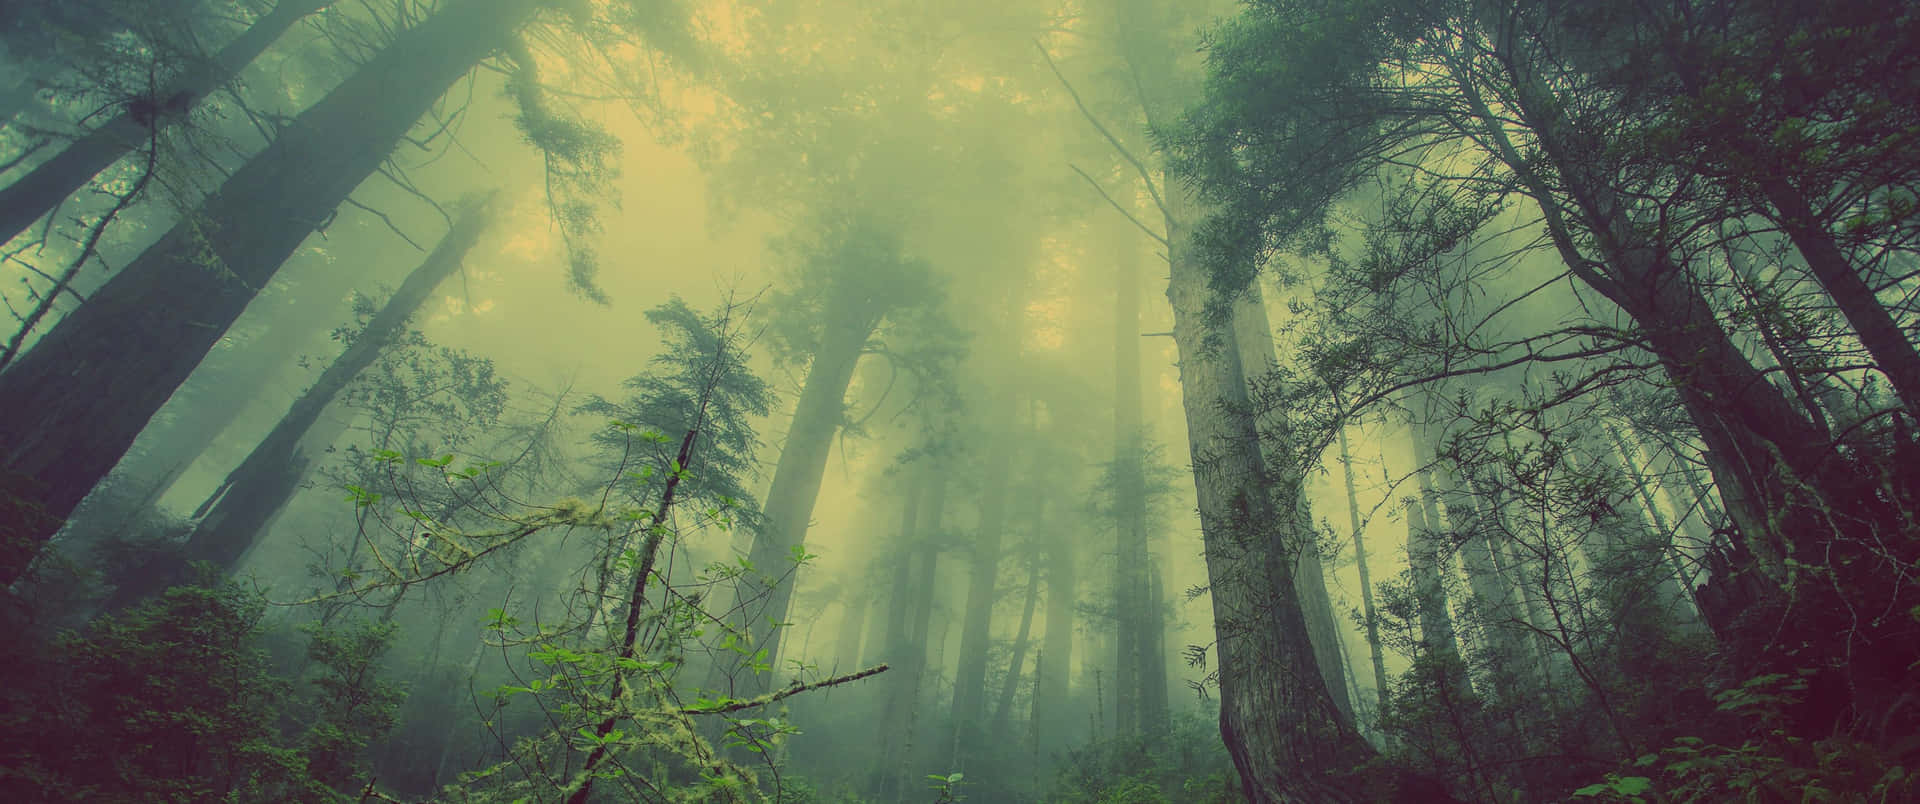 En skov med træer og tåge